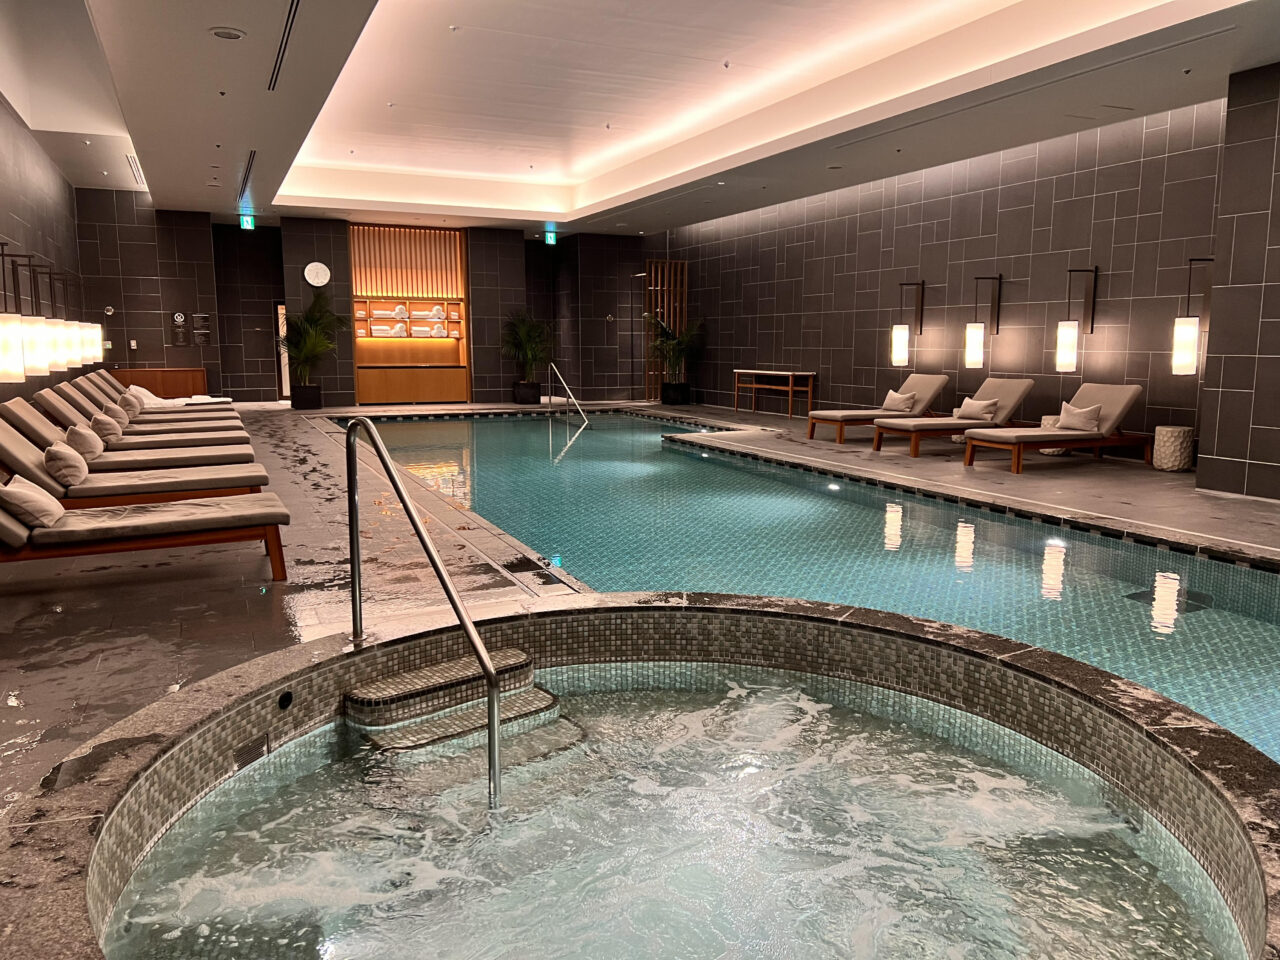 JWマリオット・ホテル奈良のプールの写真です。